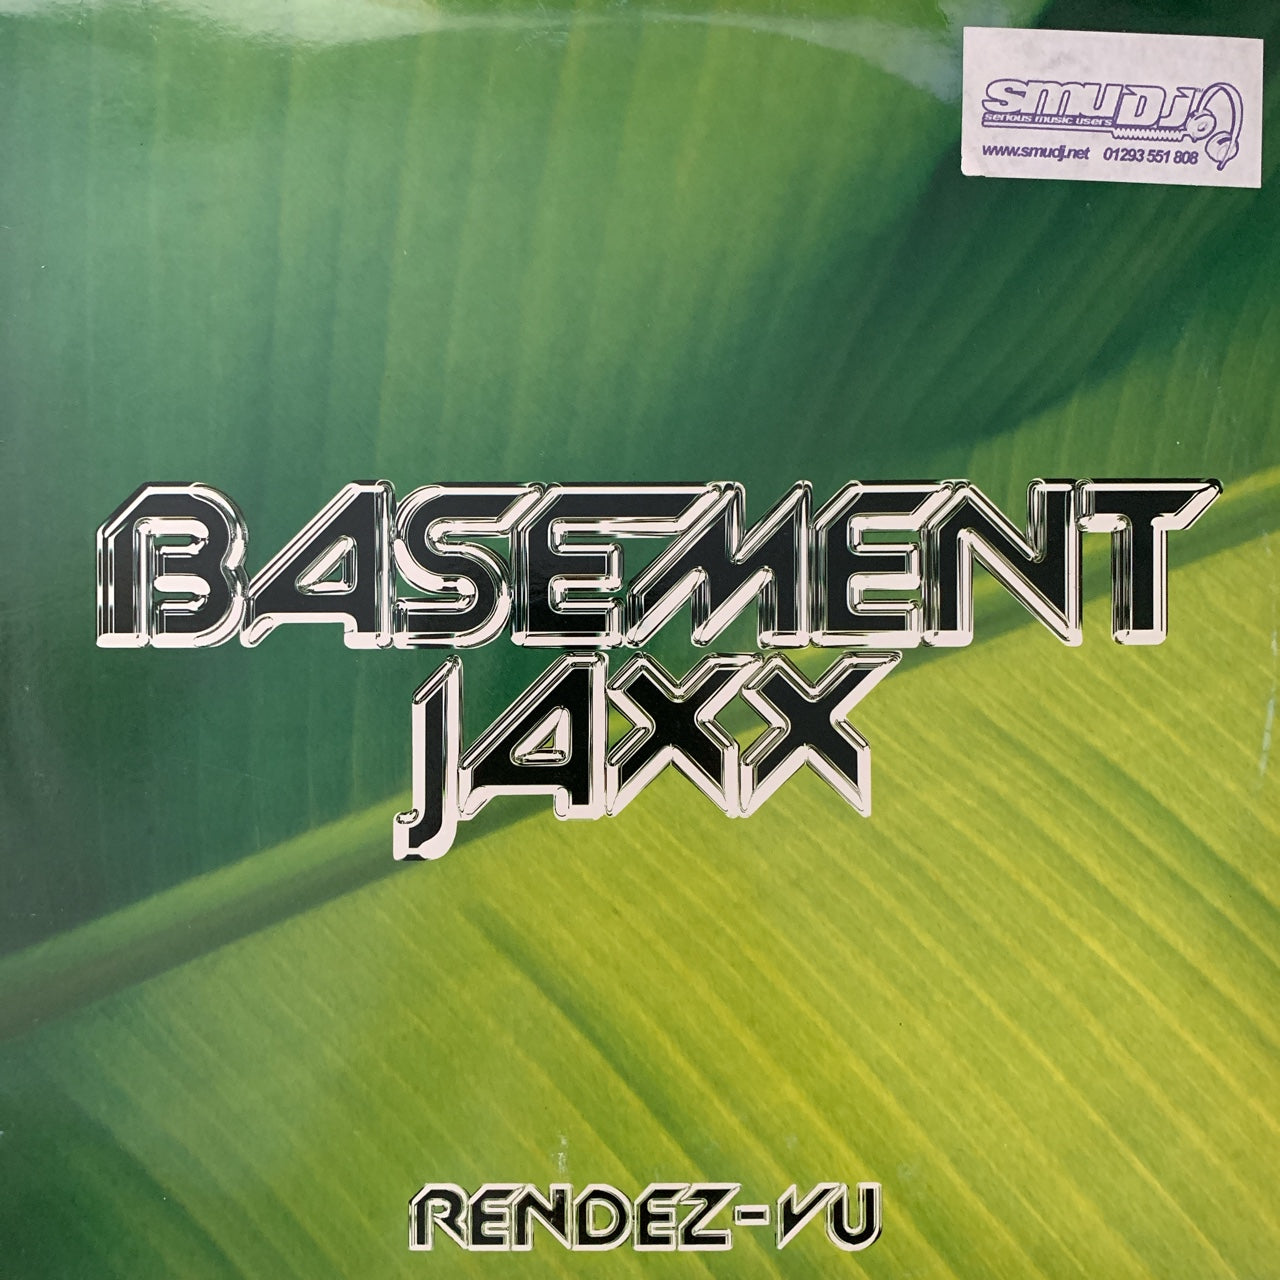 Basement Jaxx “Rendez-Vu"